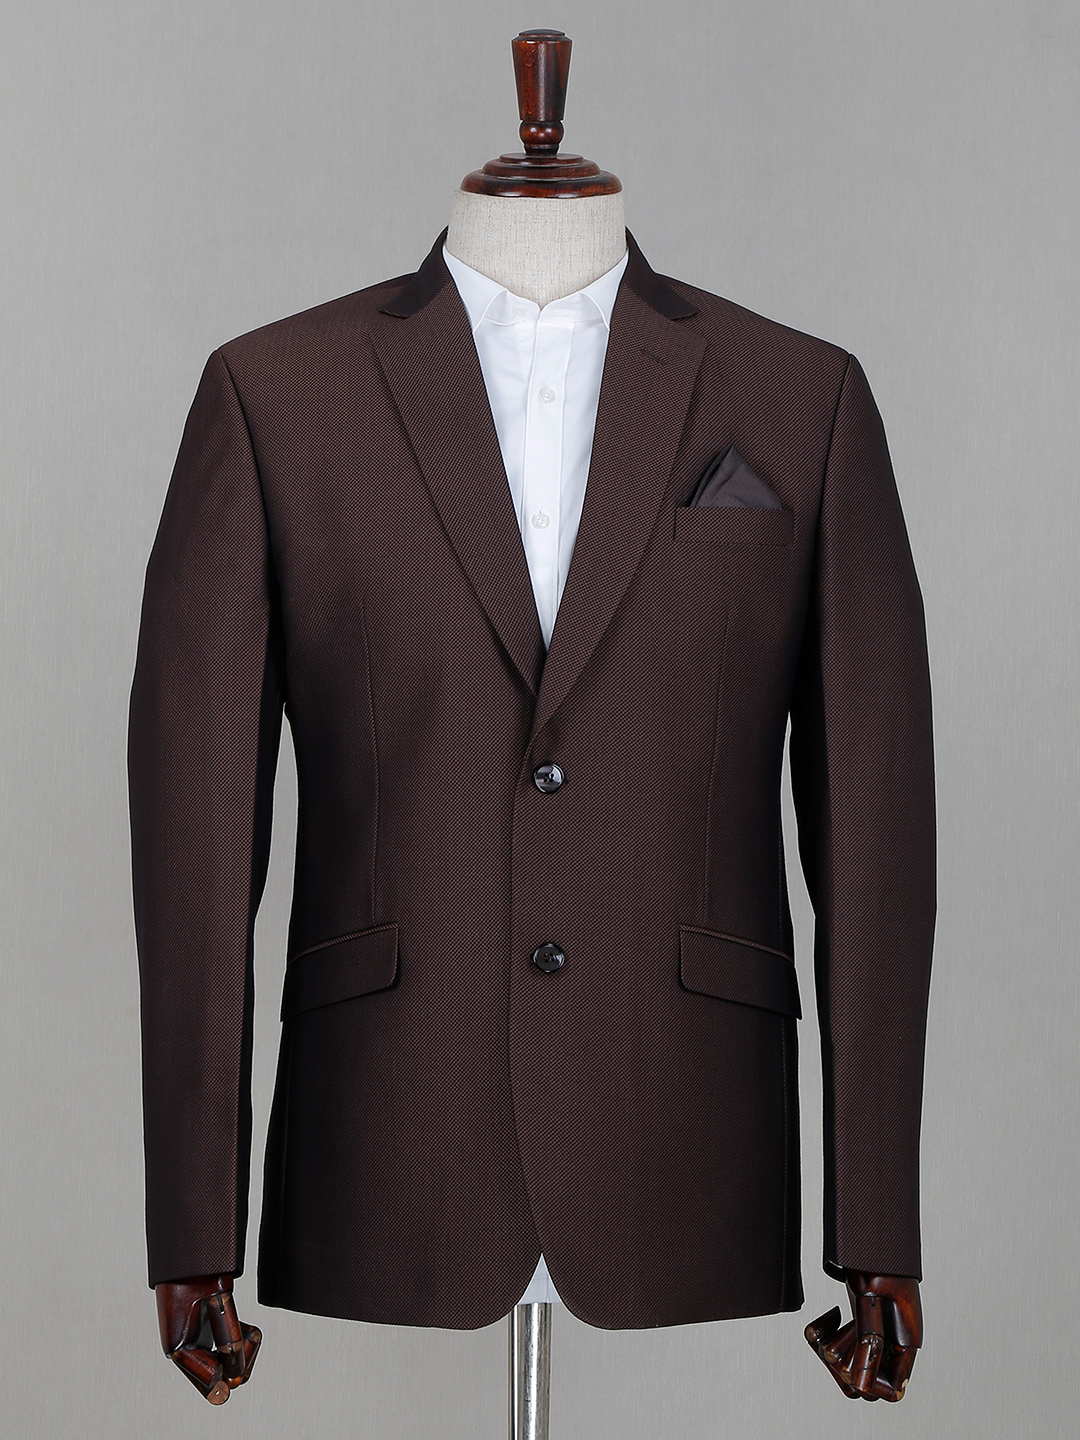 Brown Suits for Men - Gentleman's Guru